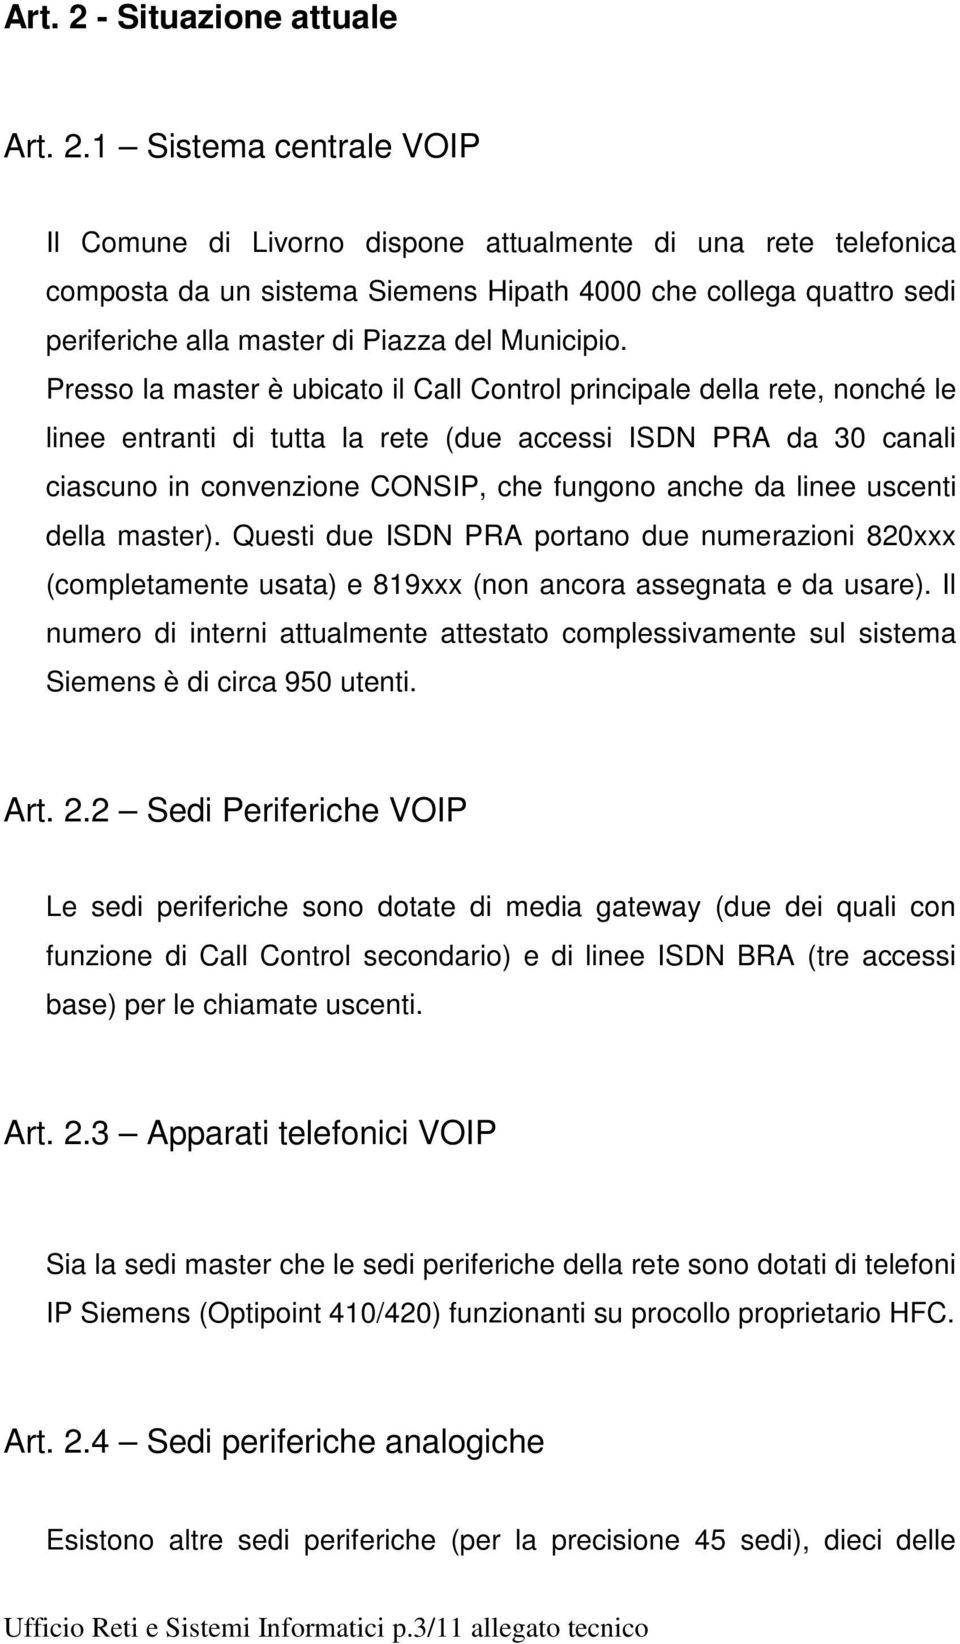 1 Sistema centrale VOIP Il Comune di Livorno dispone attualmente di una rete telefonica composta da un sistema Siemens Hipath 4000 che collega quattro sedi periferiche alla master di Piazza del